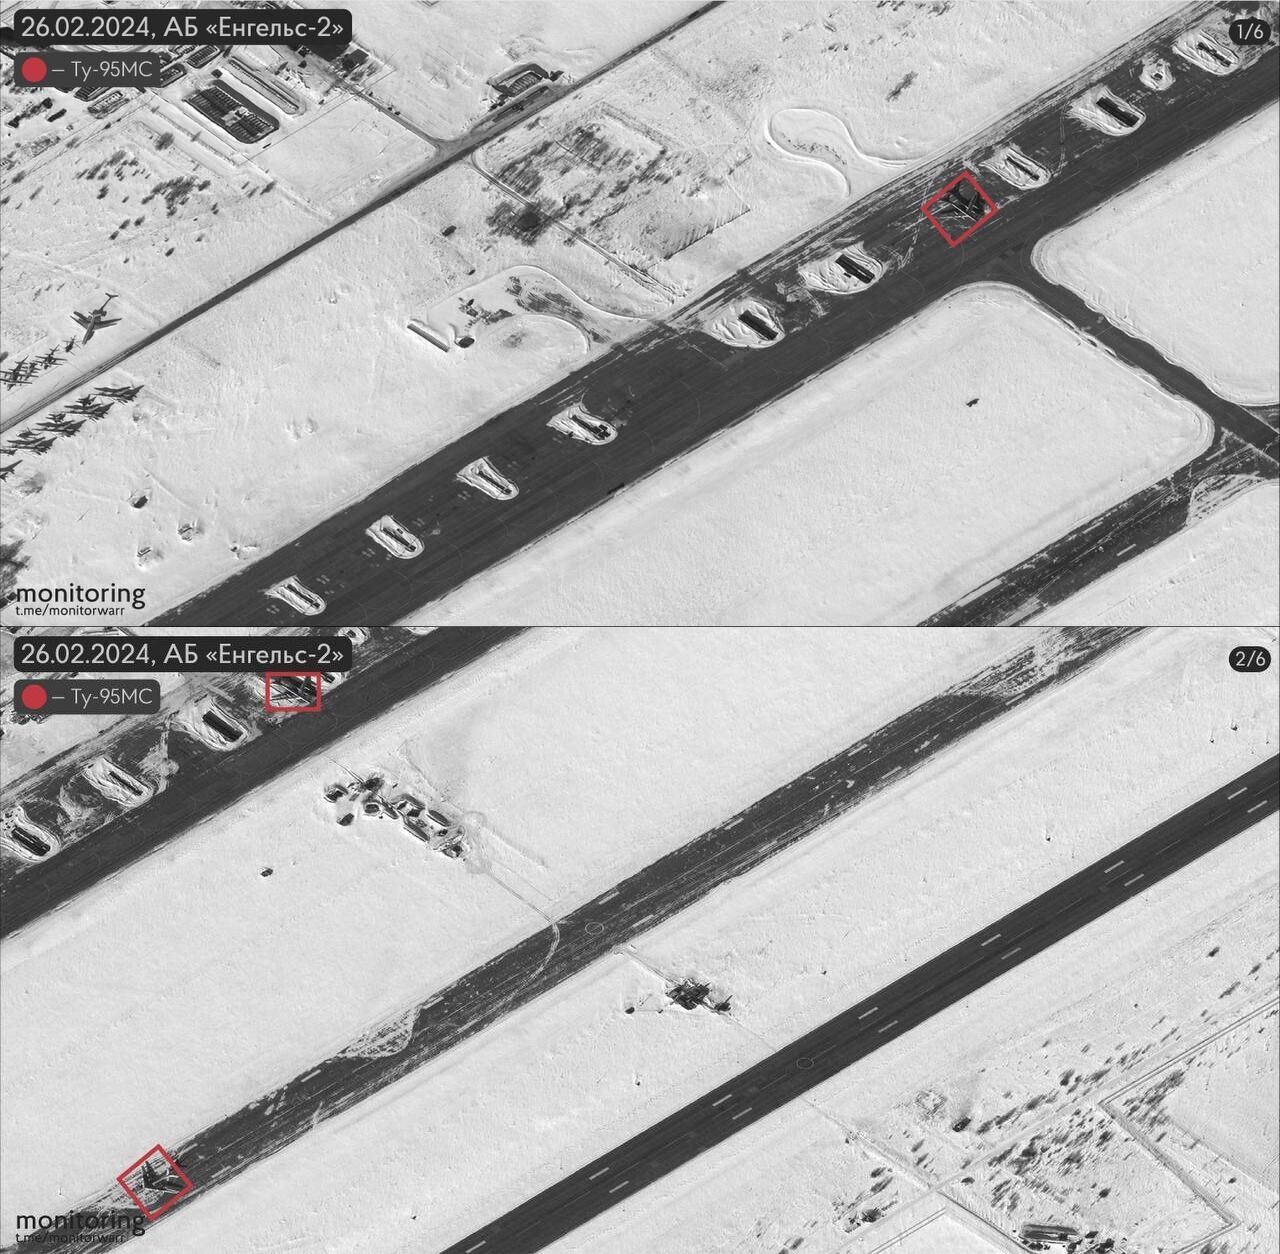 Вісім літаків було, чотири додалося: з'явились супутникові знімки аеродрому "Енгельс-2" у Росії. Фото
